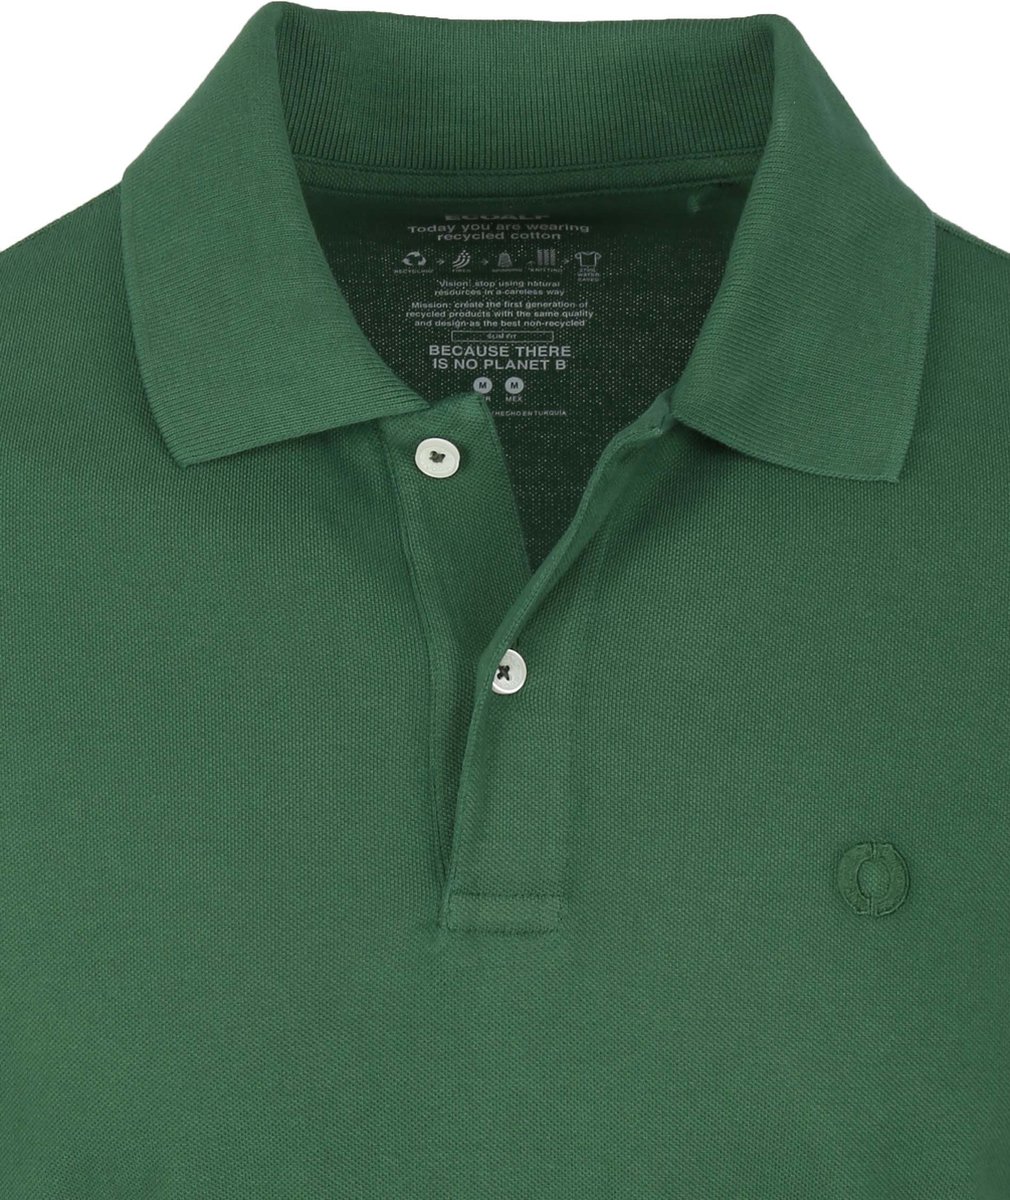 Ecoalf - Polo Groen - Modern-fit - Heren Poloshirt Maat M